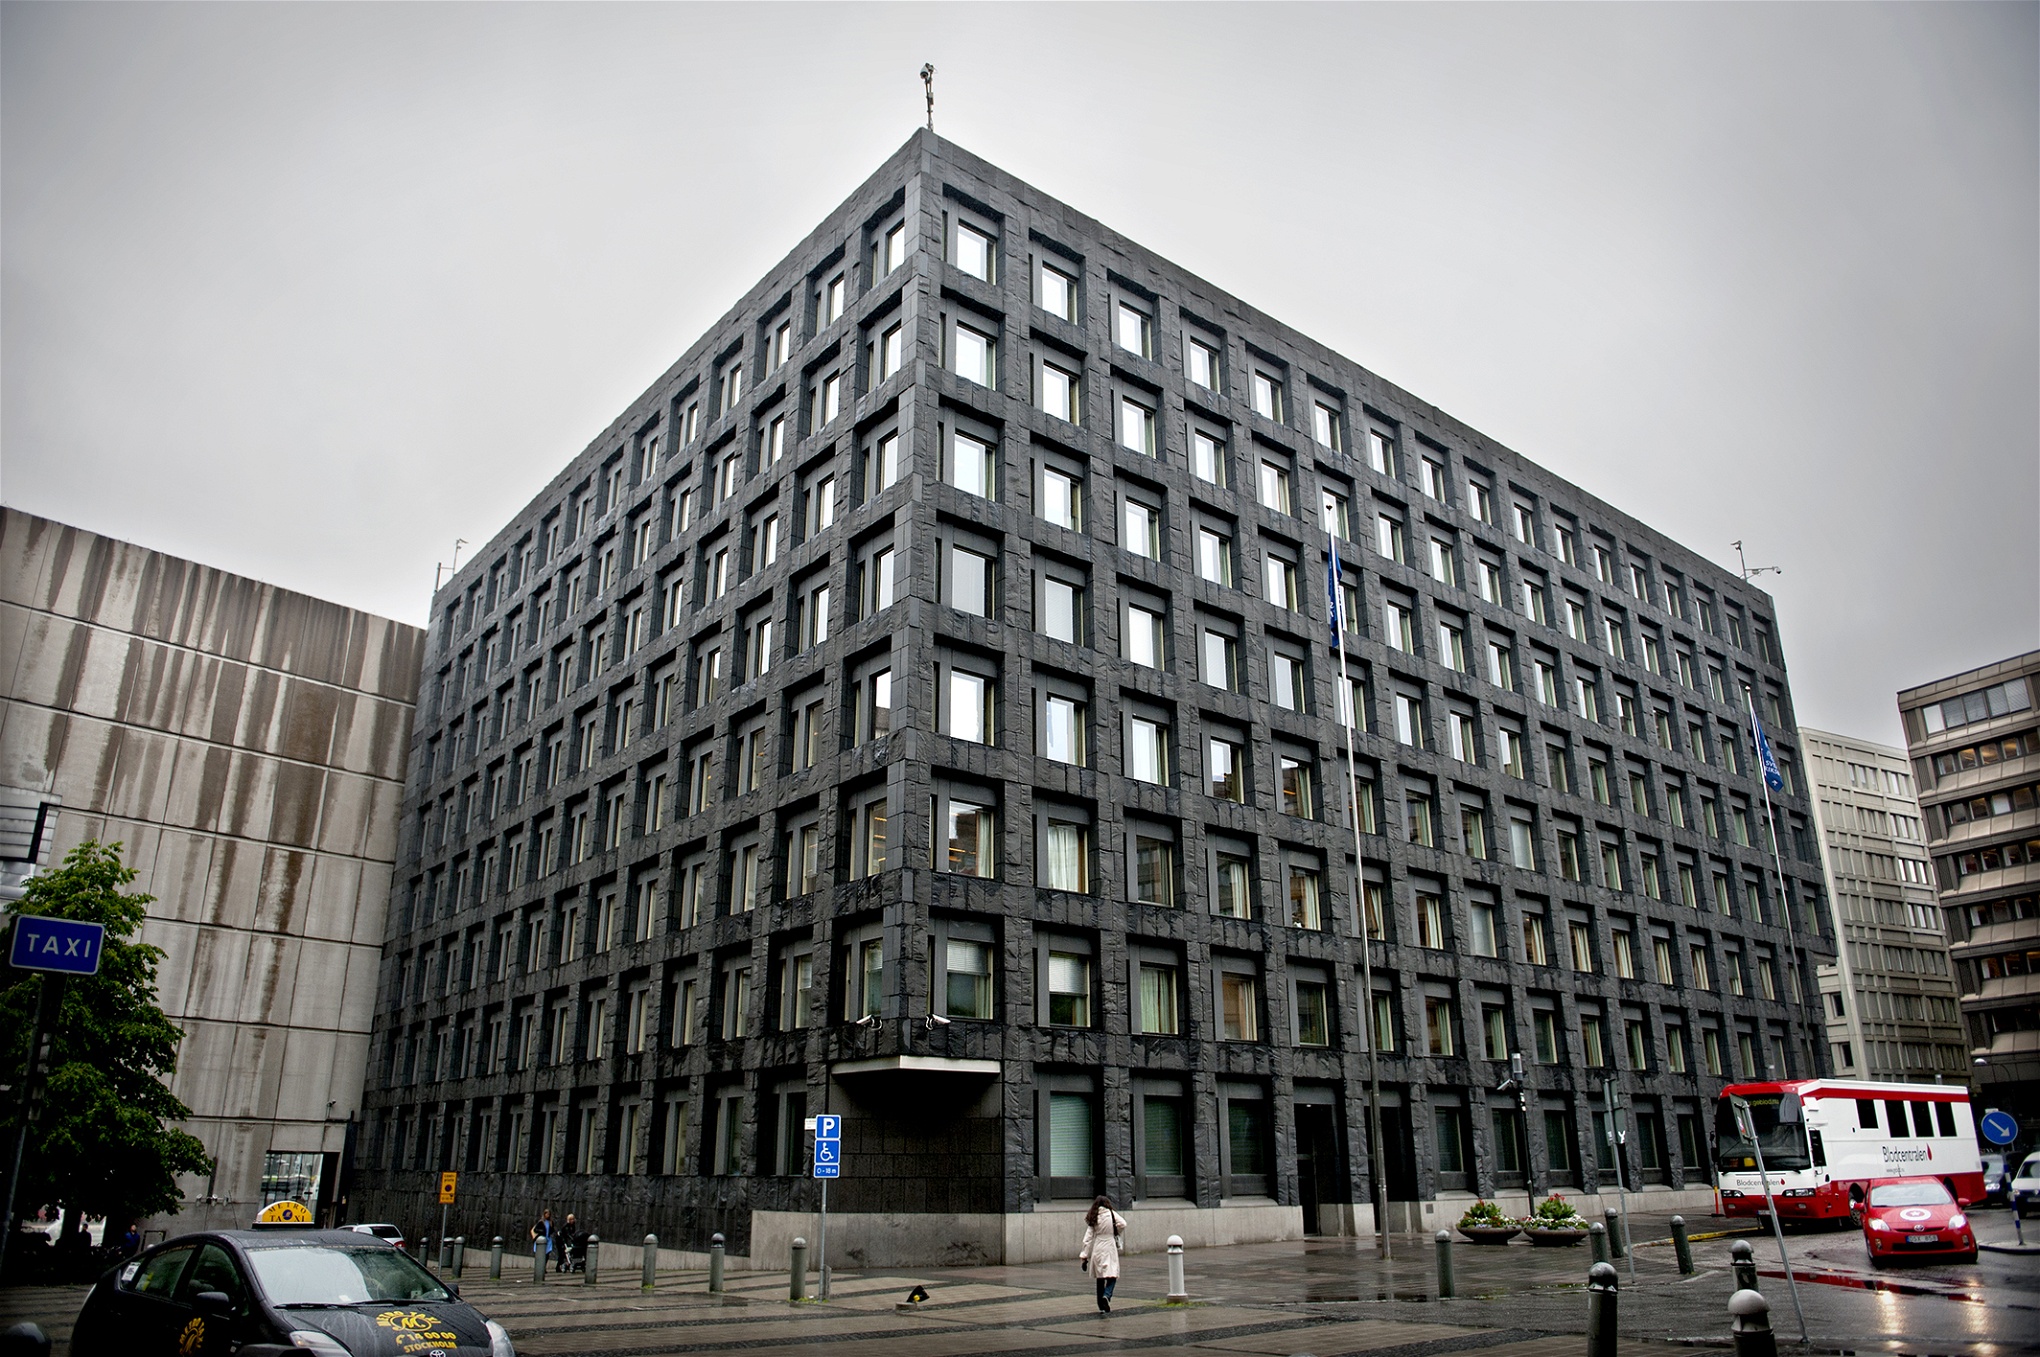 Sveriges centralbank Riksbankens huvudkontor i Stockholm. Riksbanken medger att det är bankernas rätt som företag att neka konton och tjänster i enlighet med deras egna regler.